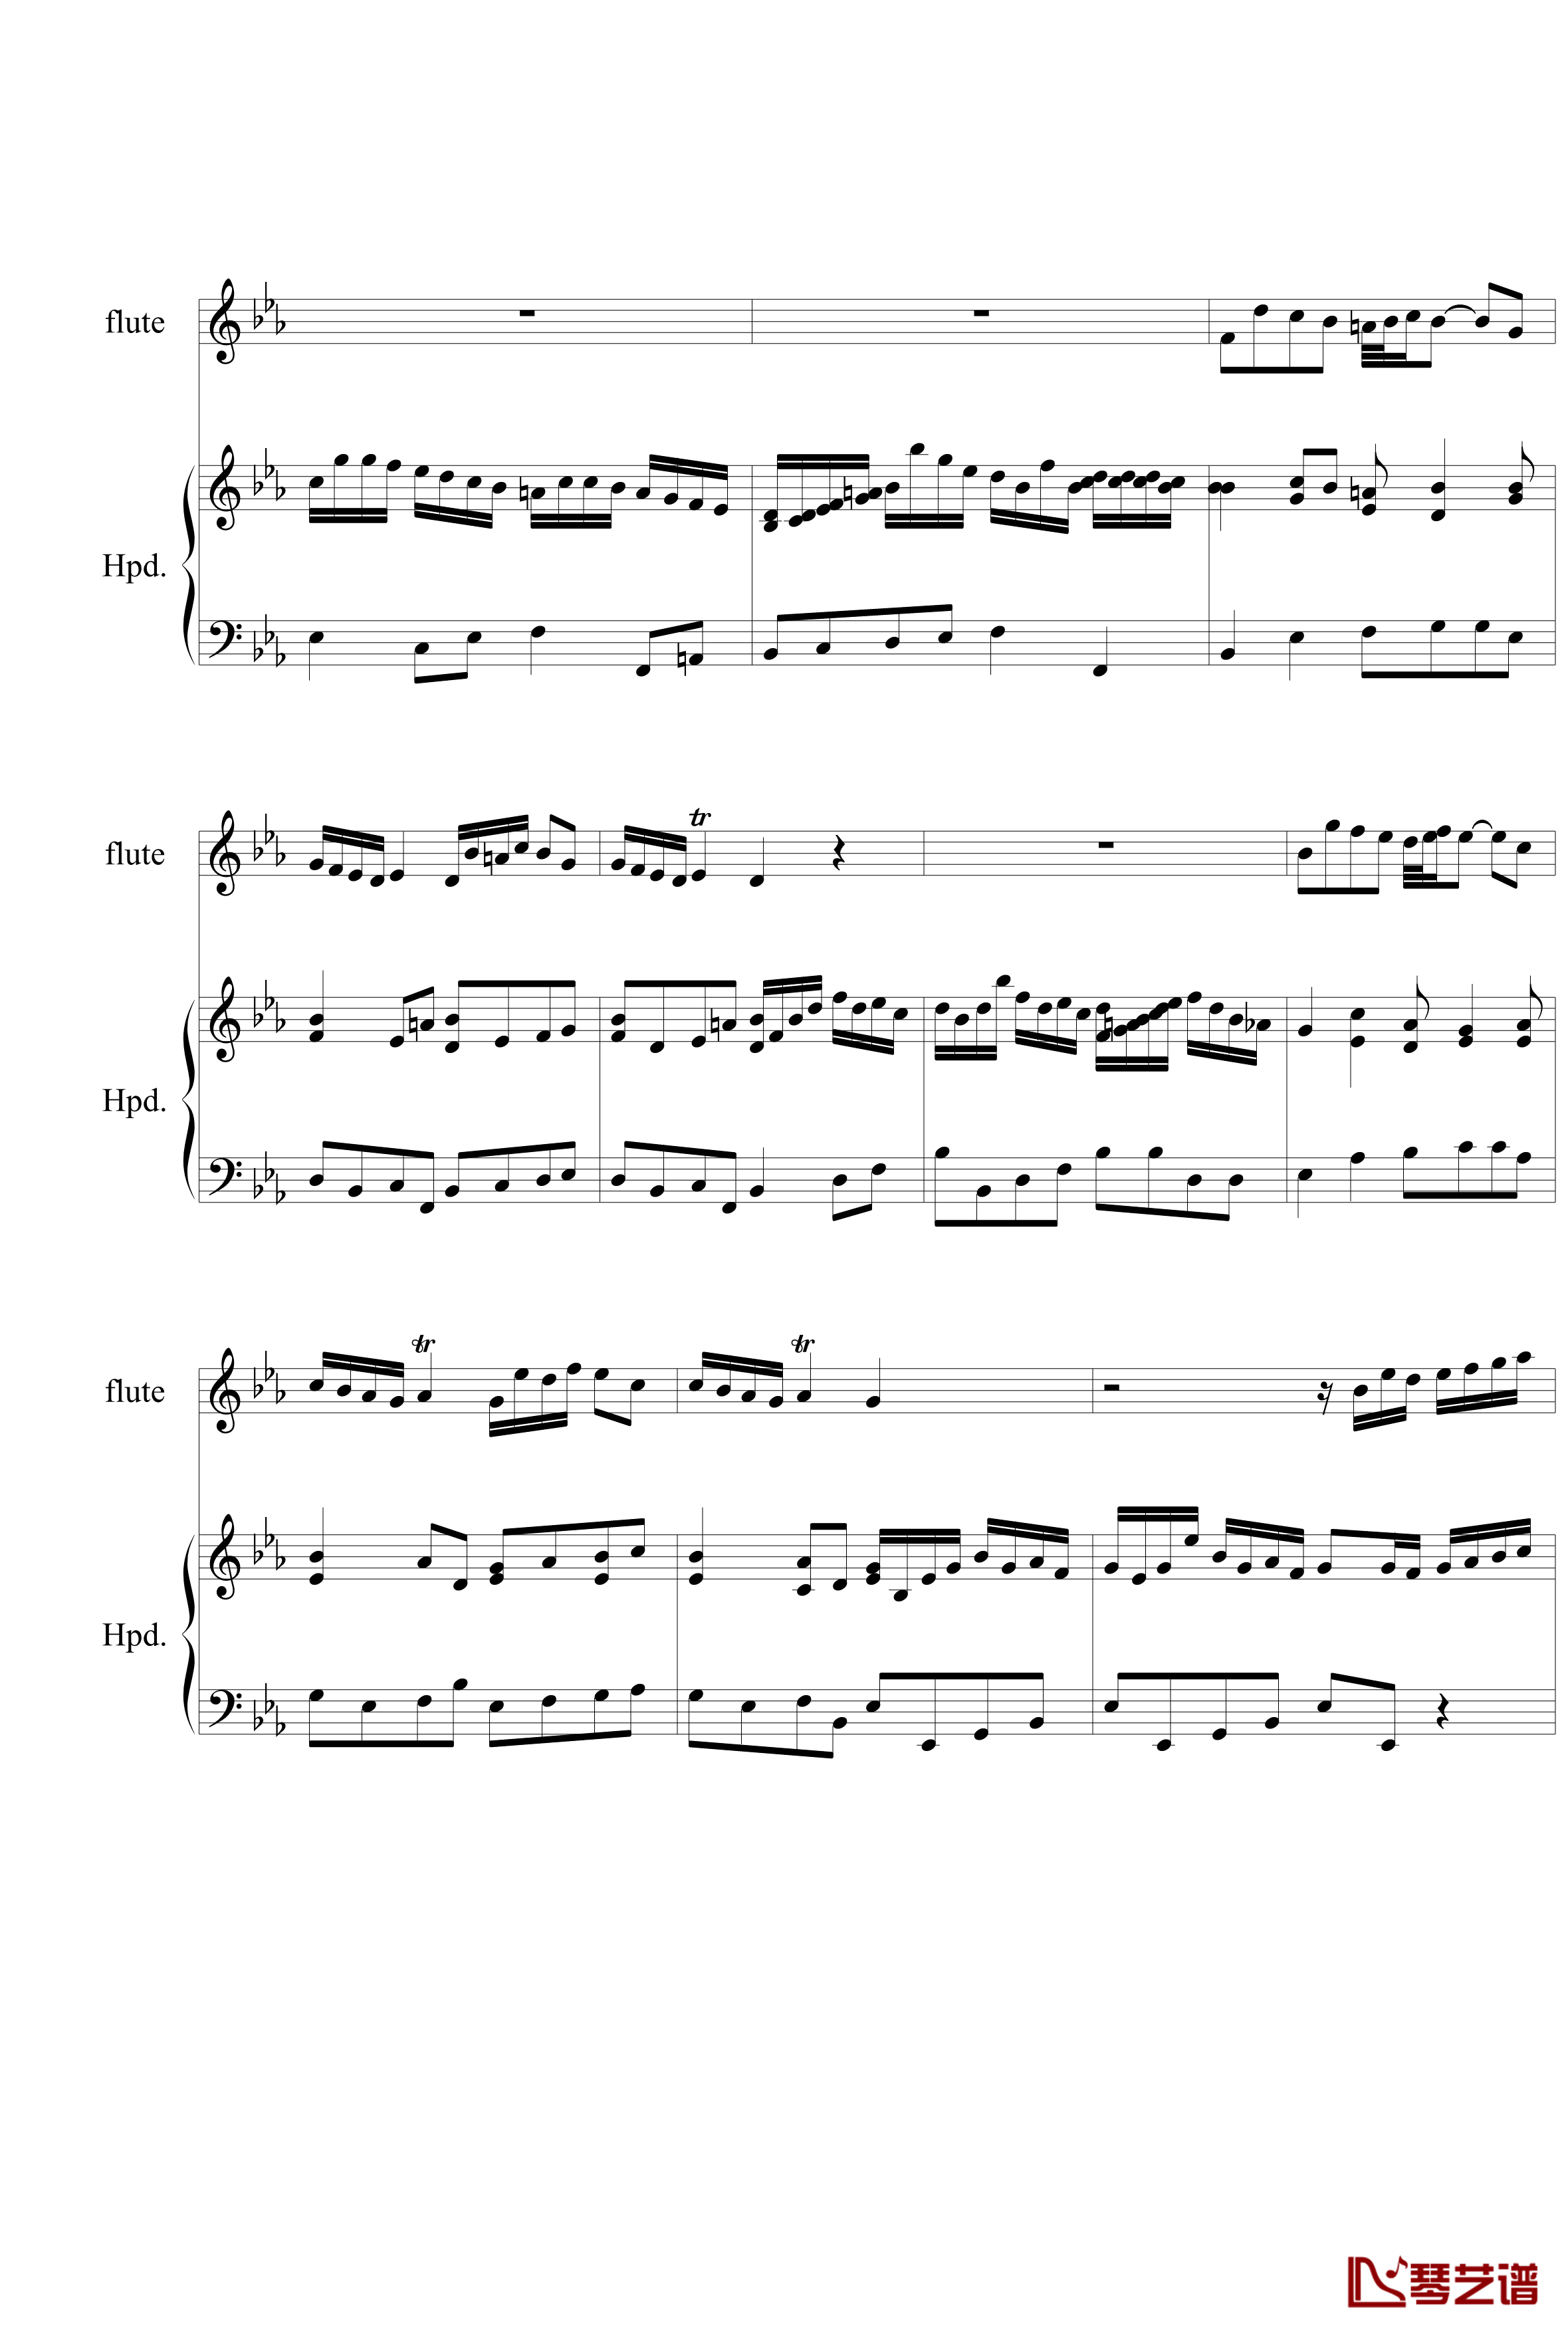 羽管键琴协奏曲BWV1031第一乐章钢琴谱-巴赫-P.E.Bach4